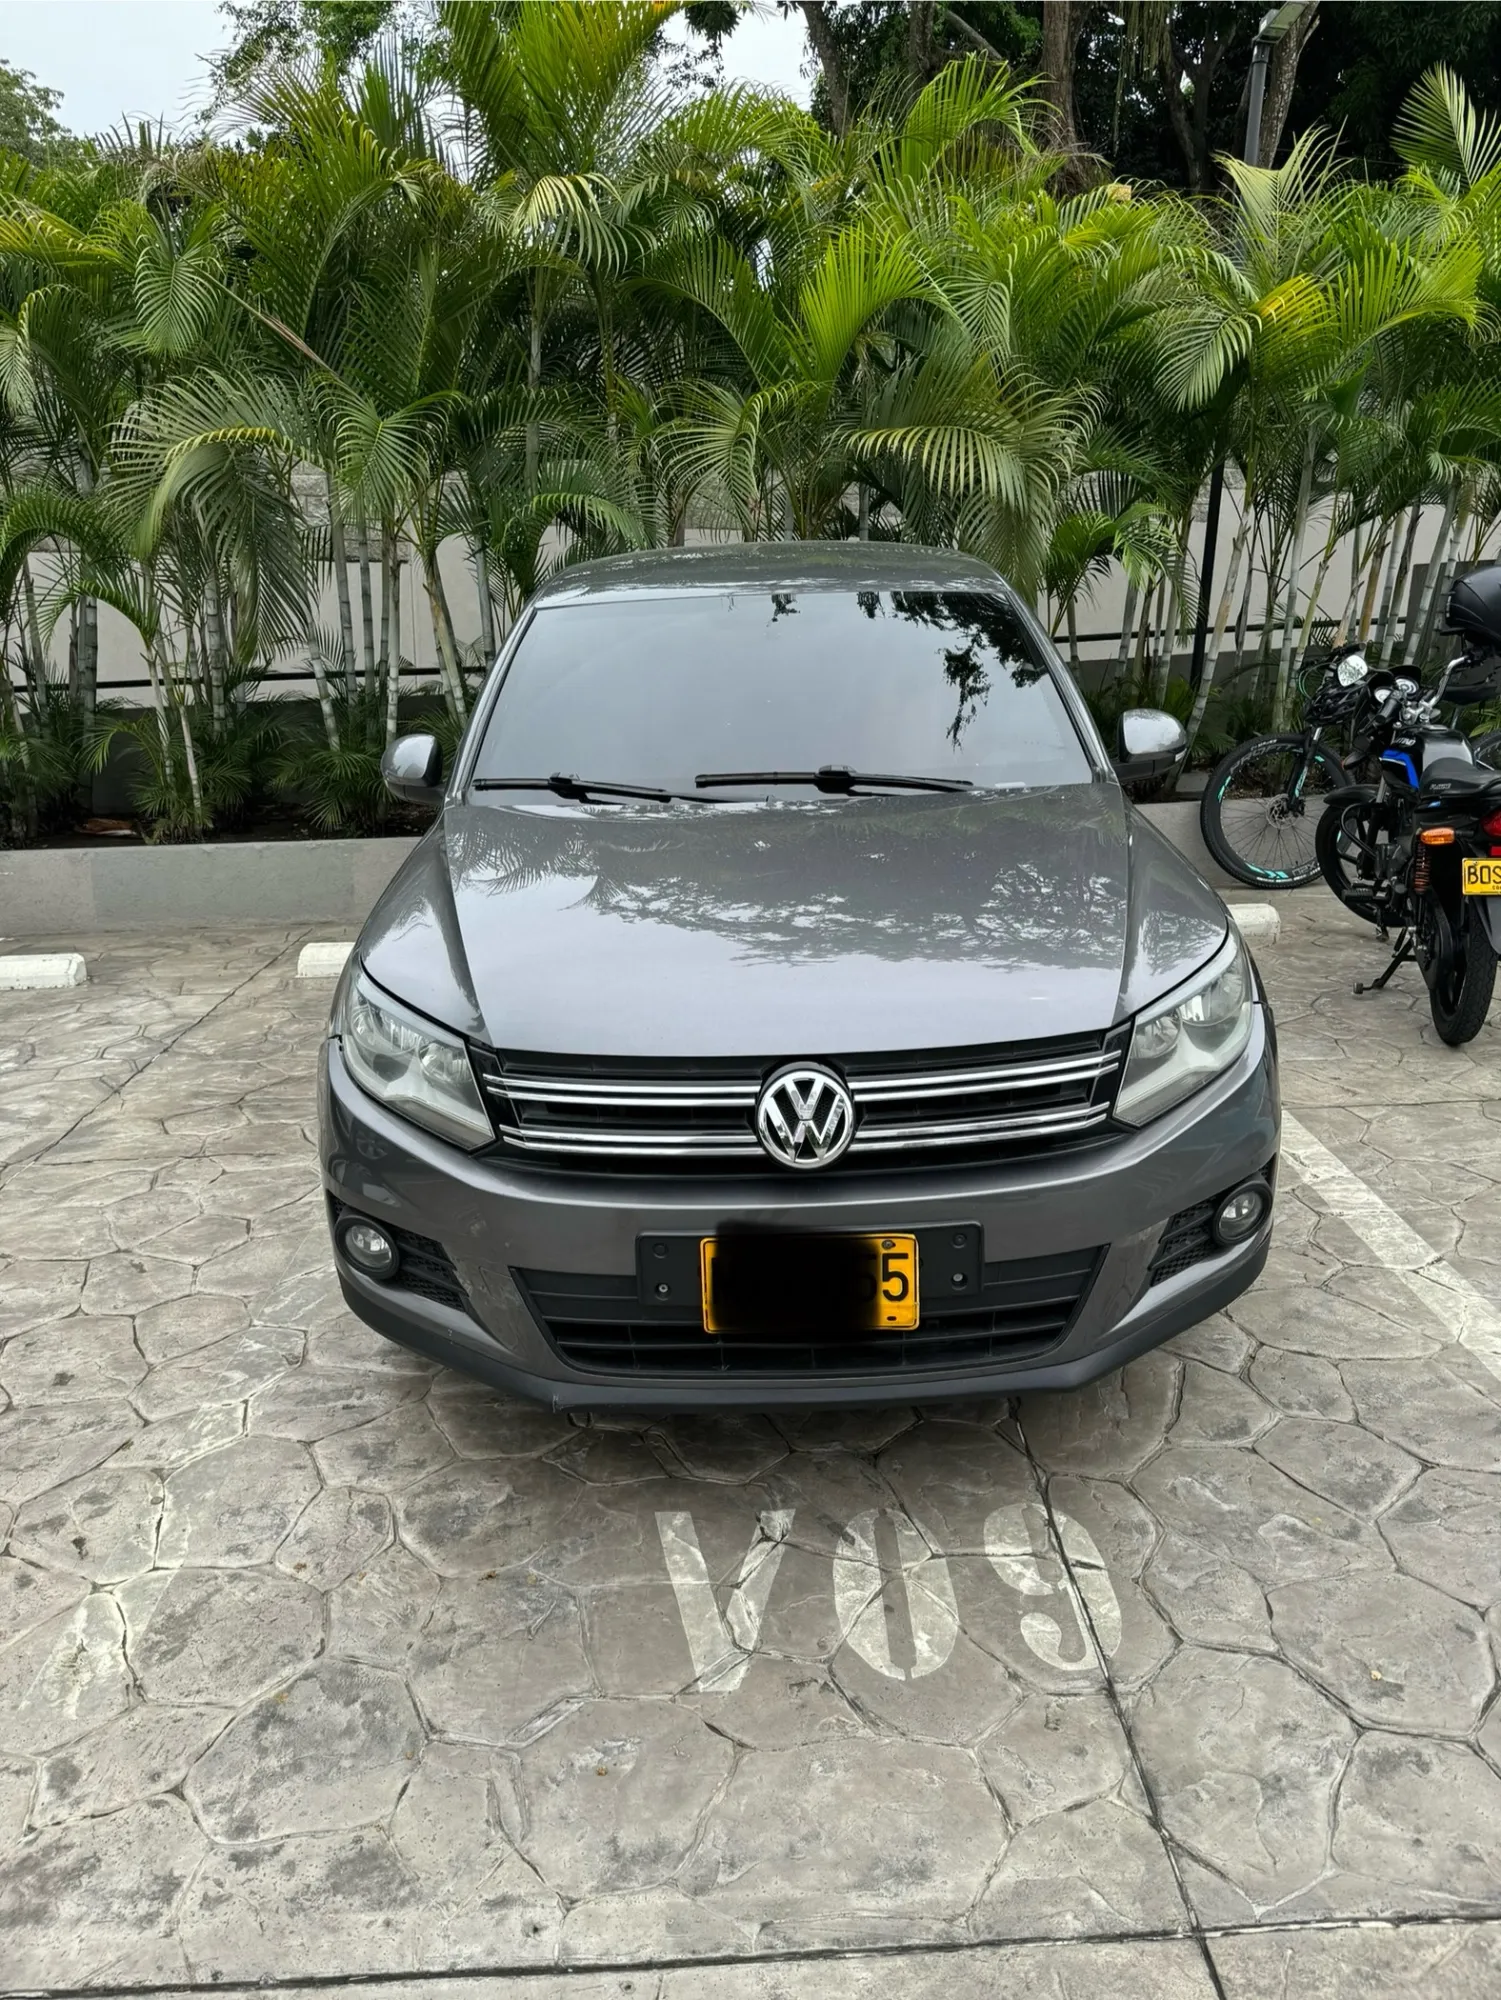 Volkswagen Tiguan 2014 Blindaje 2 - 4x4